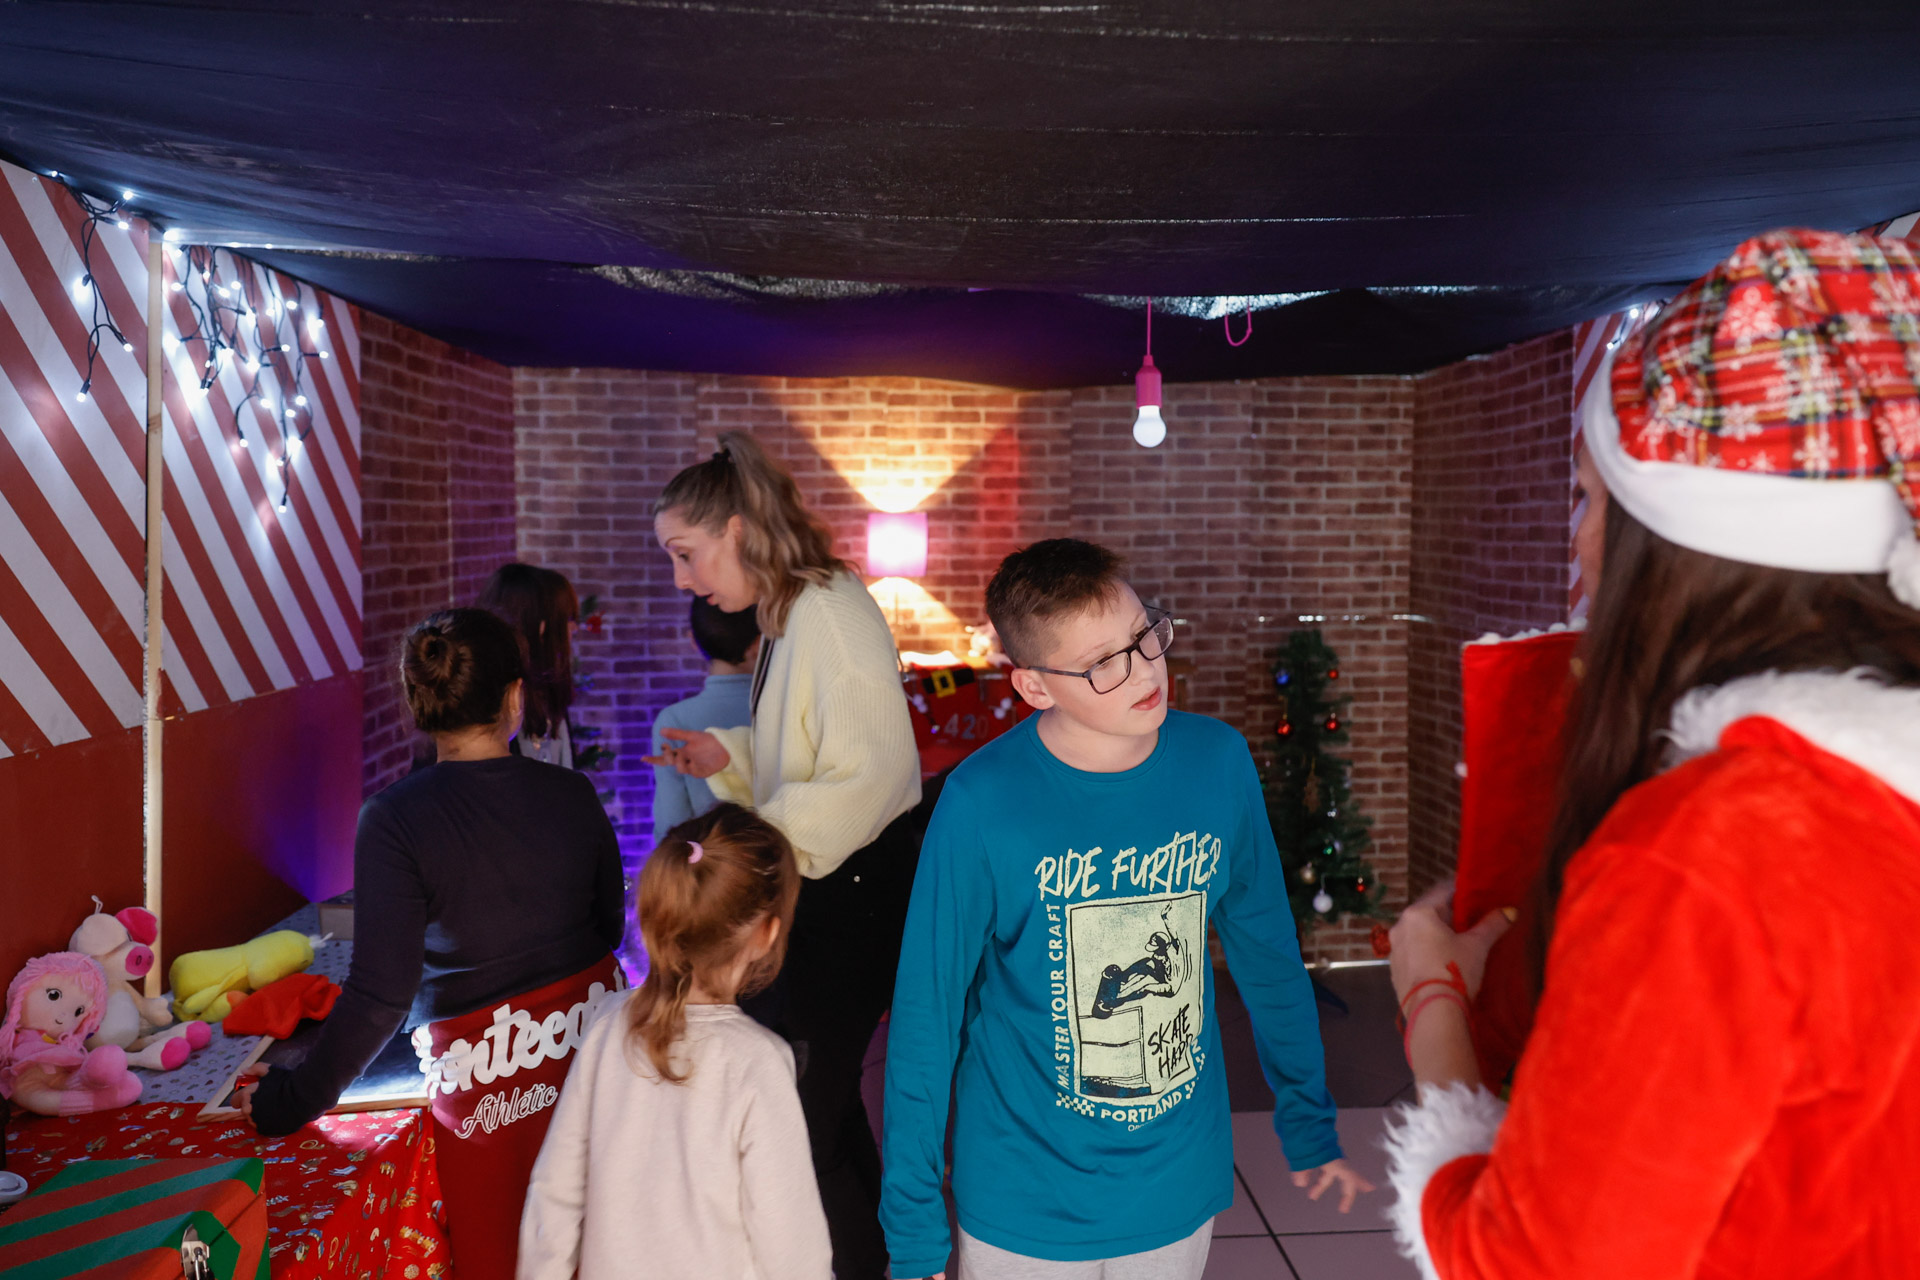 El Matí Nadalenc organizado por Juventud incluyó un escape room de ambientación navideña